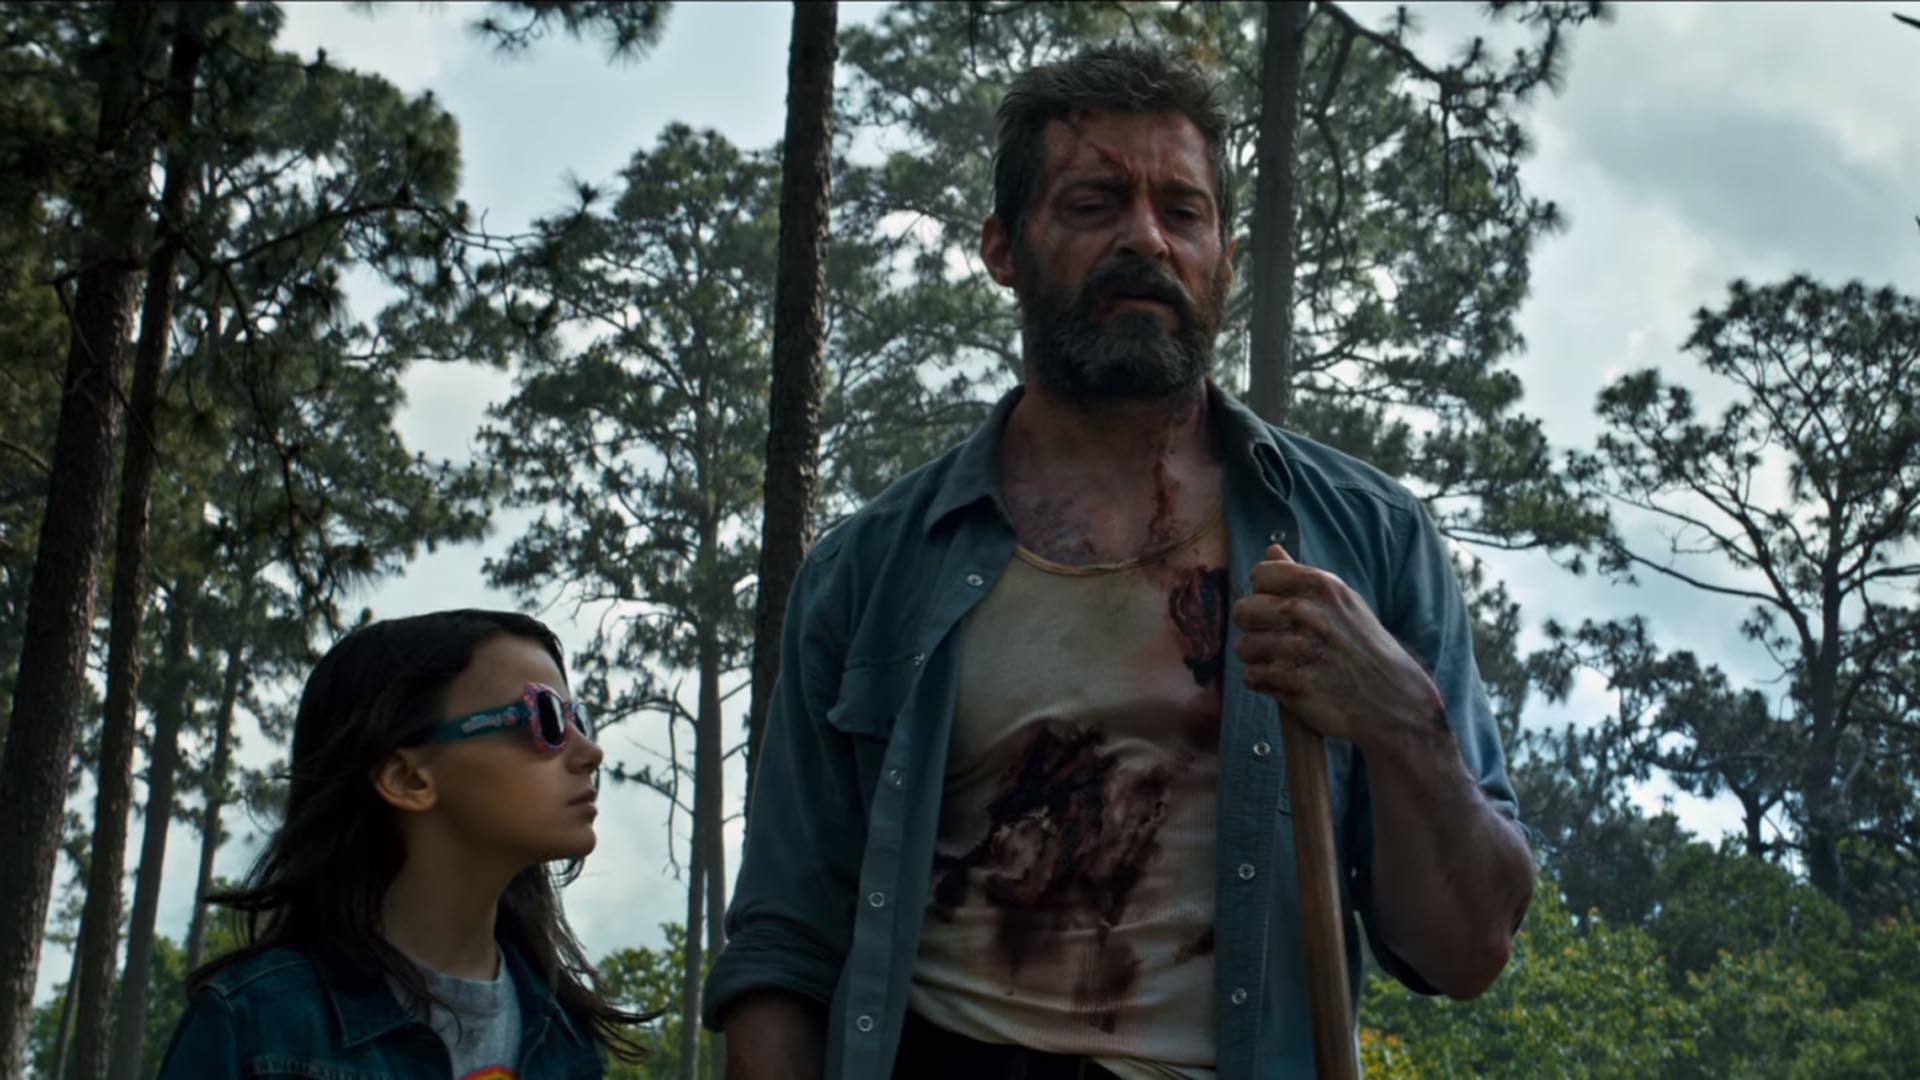 Trailer 2017 Online Wolverine 3 Watch